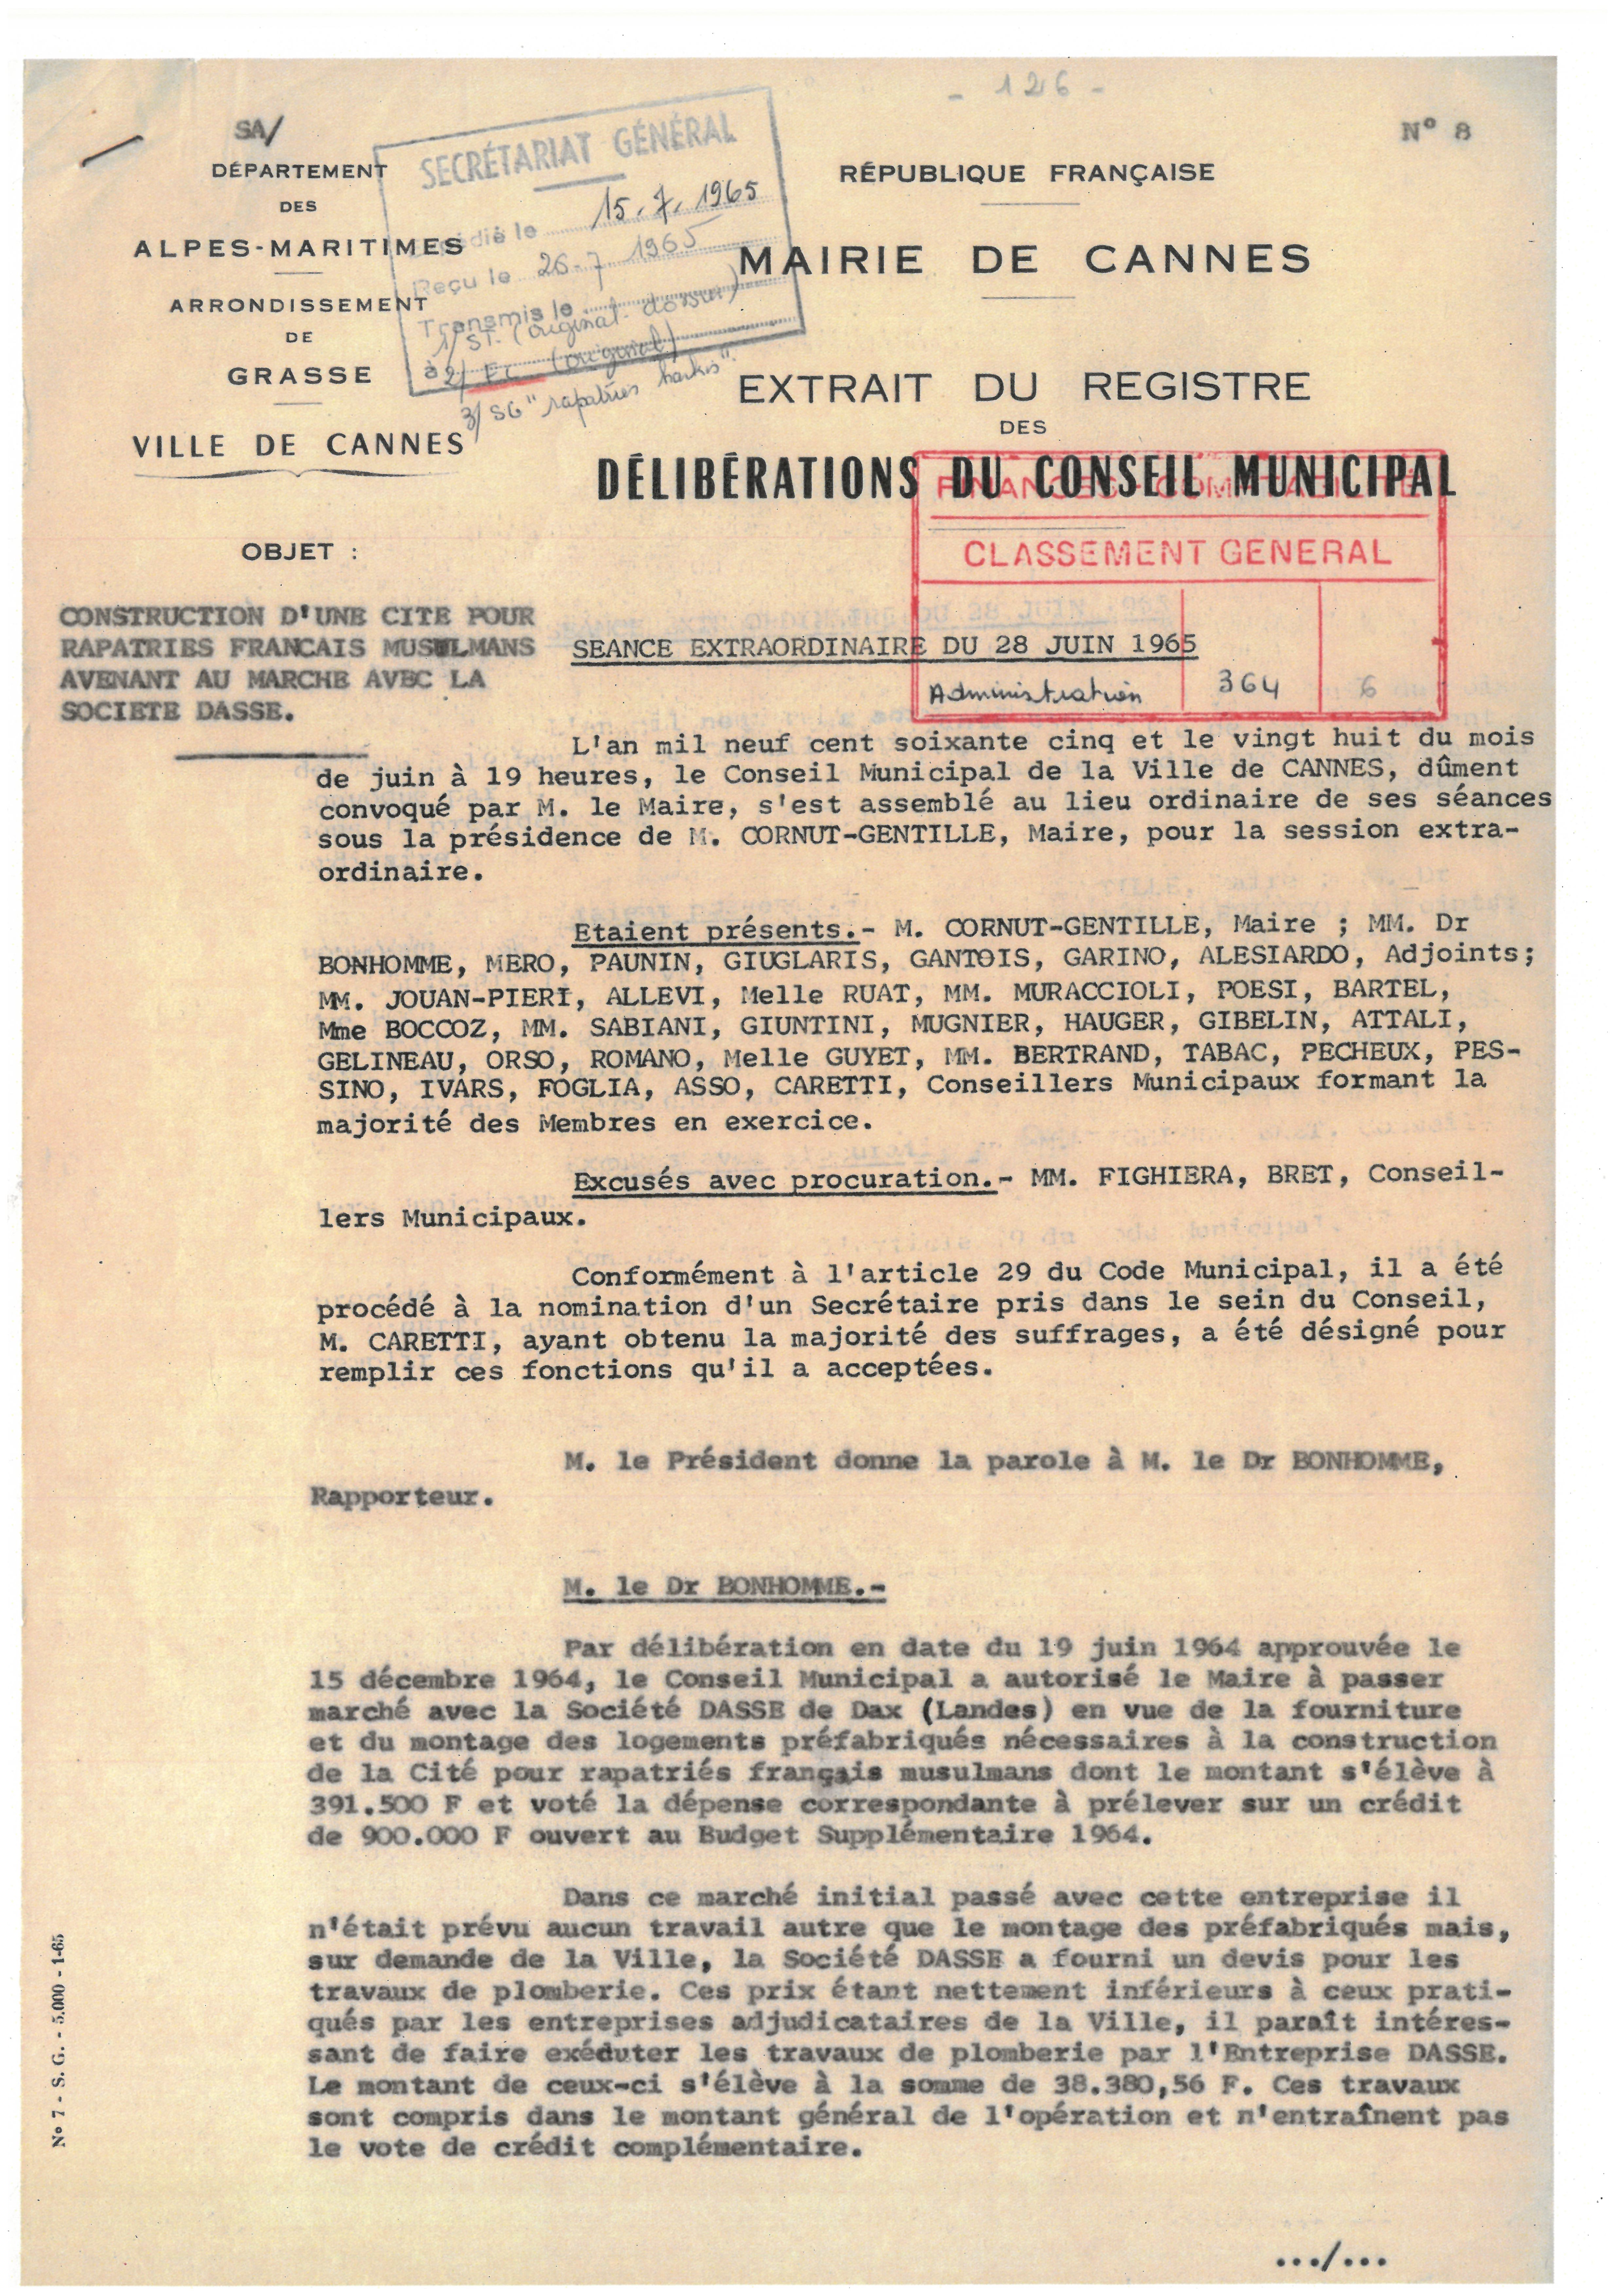 Illustration 16, p. 1 : accueil des Harkis à Cannes, délibérations du conseil municipal, séance extraordinaire du 28 juin 1965 (Archives de Cannes, 22W238)